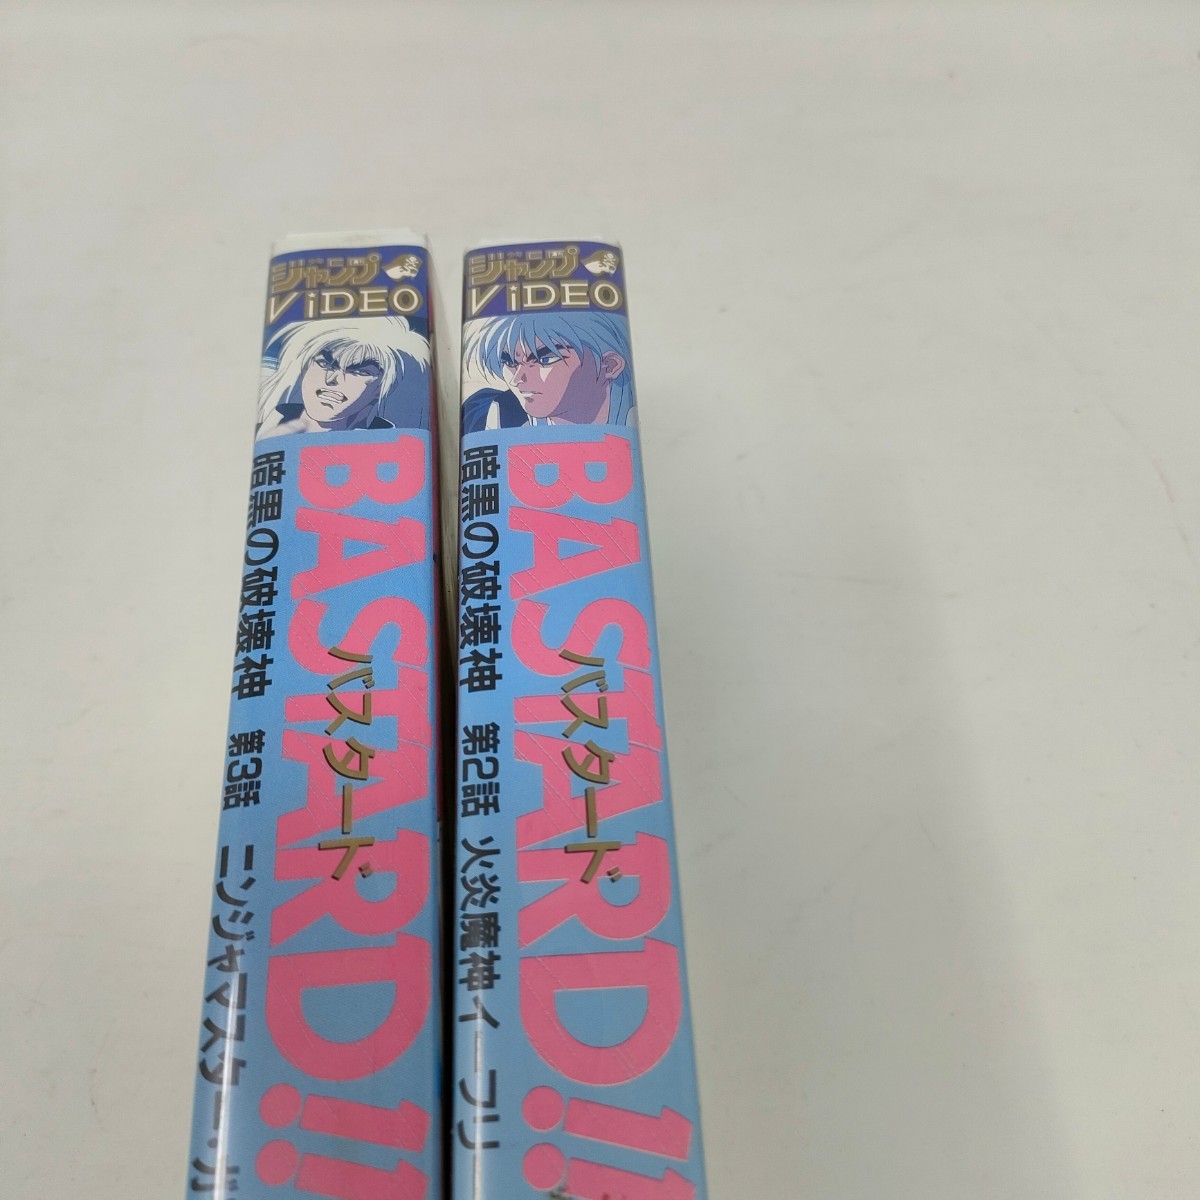 VHS BASTARD!! Bastard darkness. destruction . god no. 2 story no. 3 story videotape prompt decision postage included 